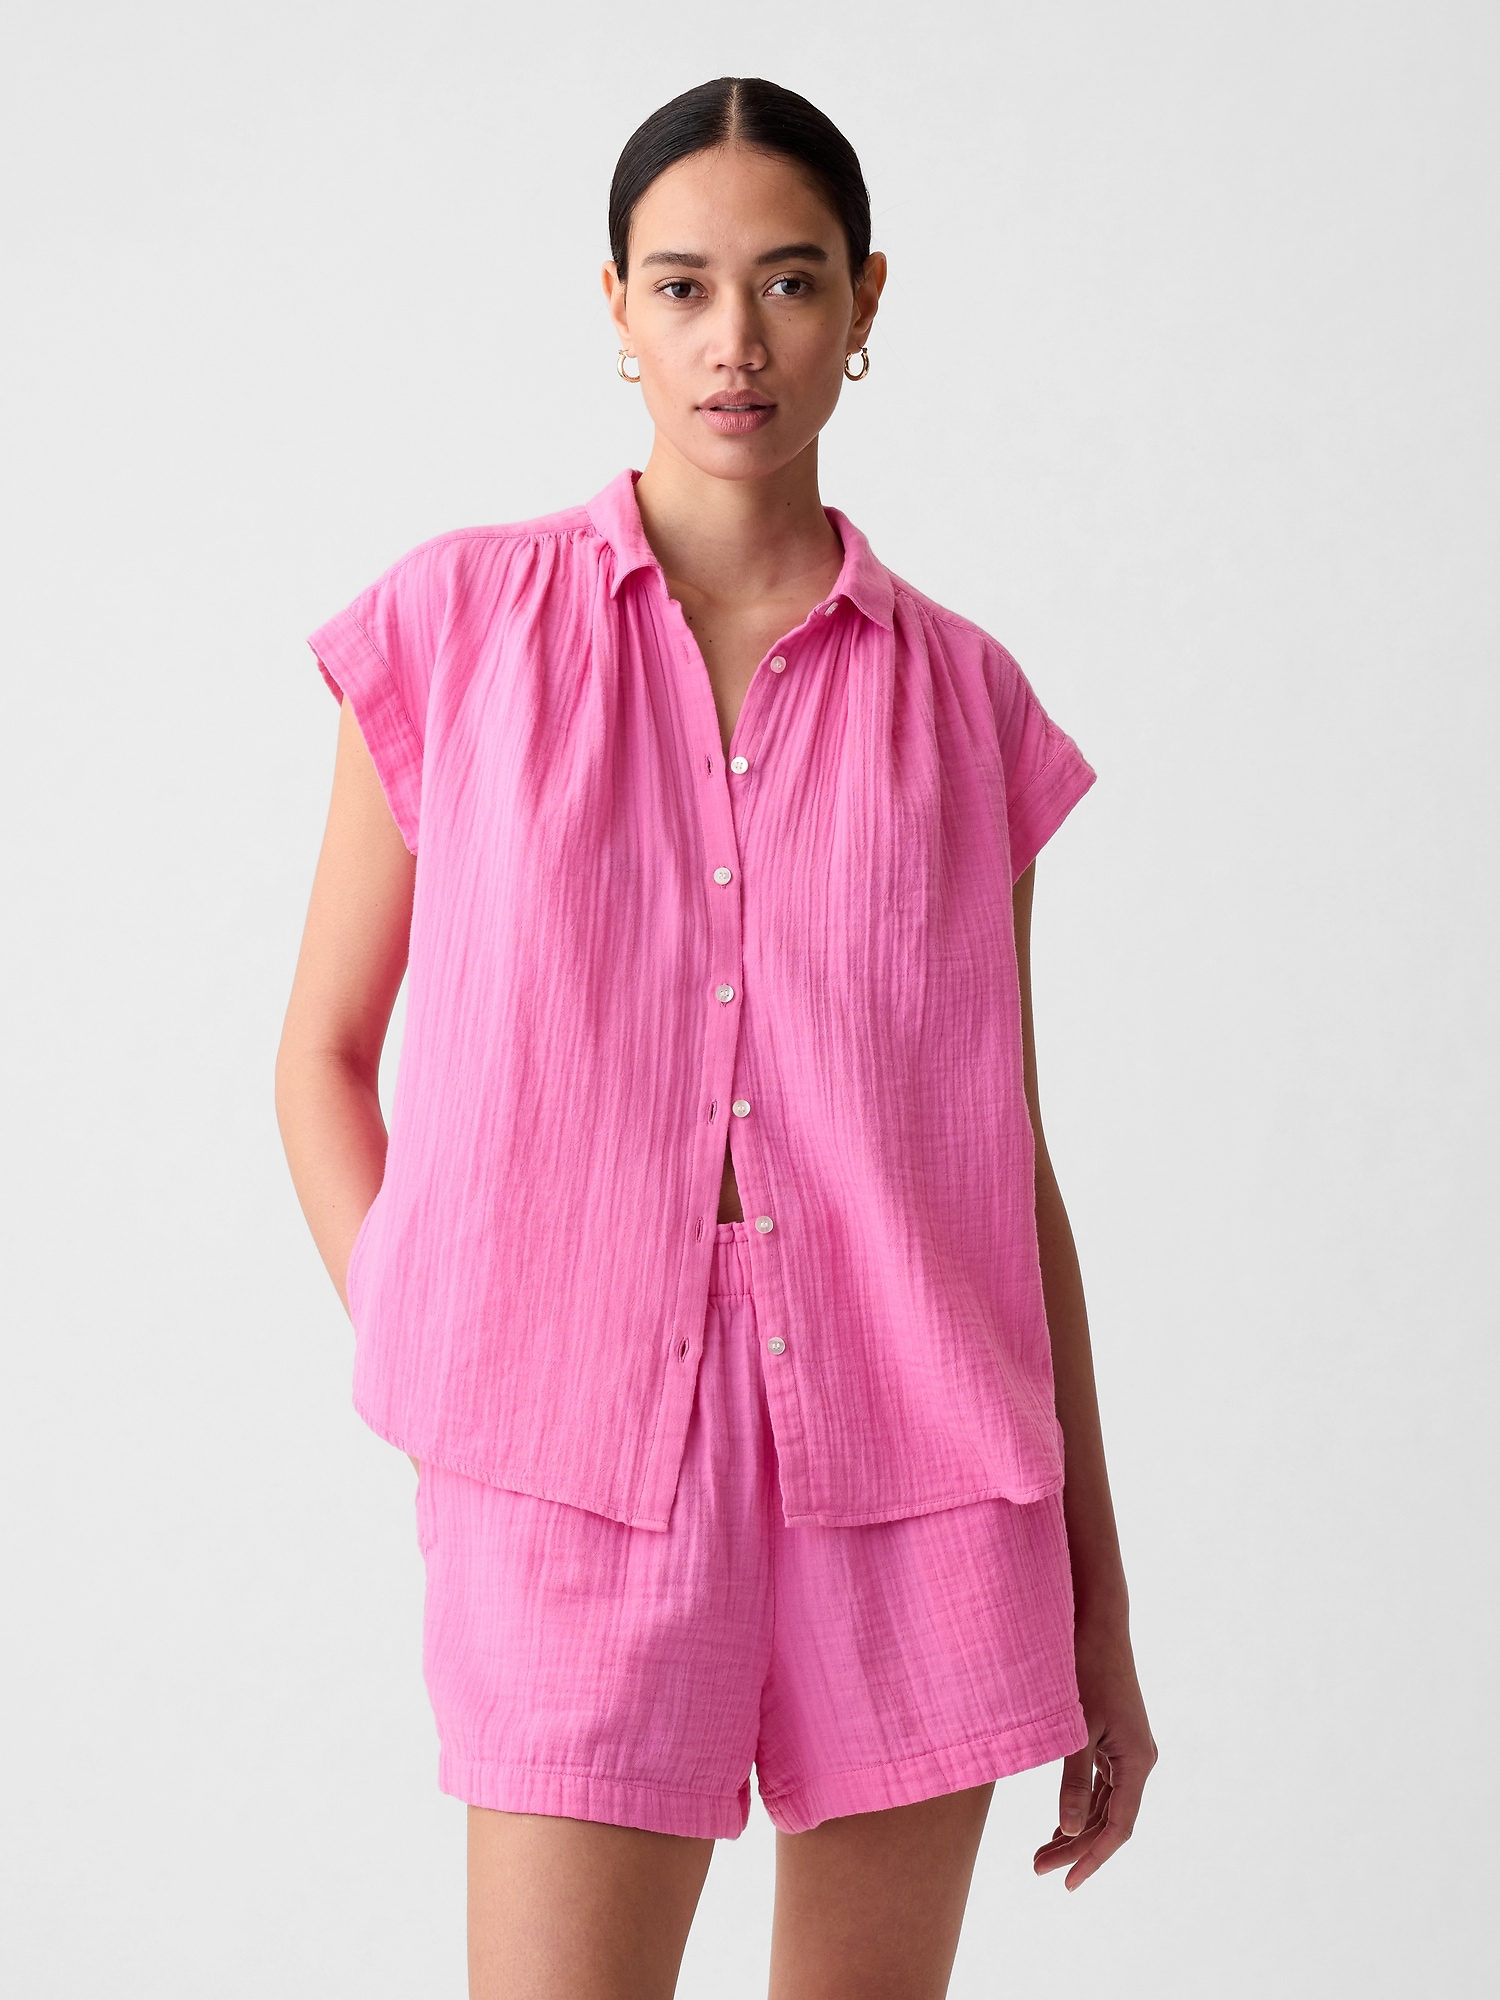 Gap Crinkle Gauze Shirt In Indie Pink